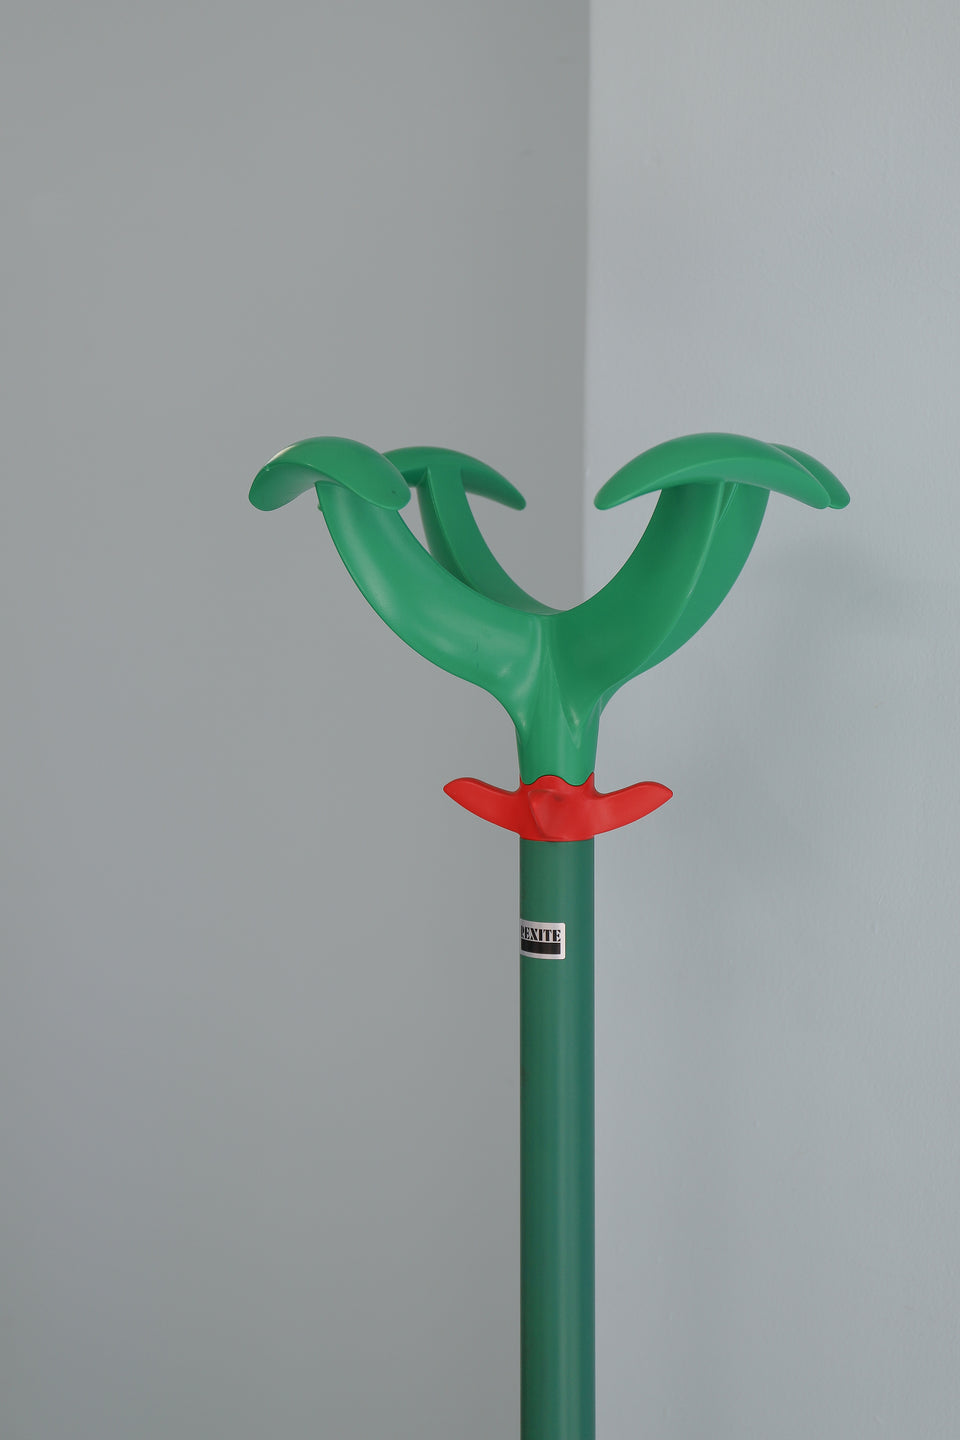 Rexite Coat Stand with Umbrella Stand Cactus Raul Barbieri/レキサイト コートスタンド 傘立て カクタス ラウル・バルビエリ イタリアンデザイン